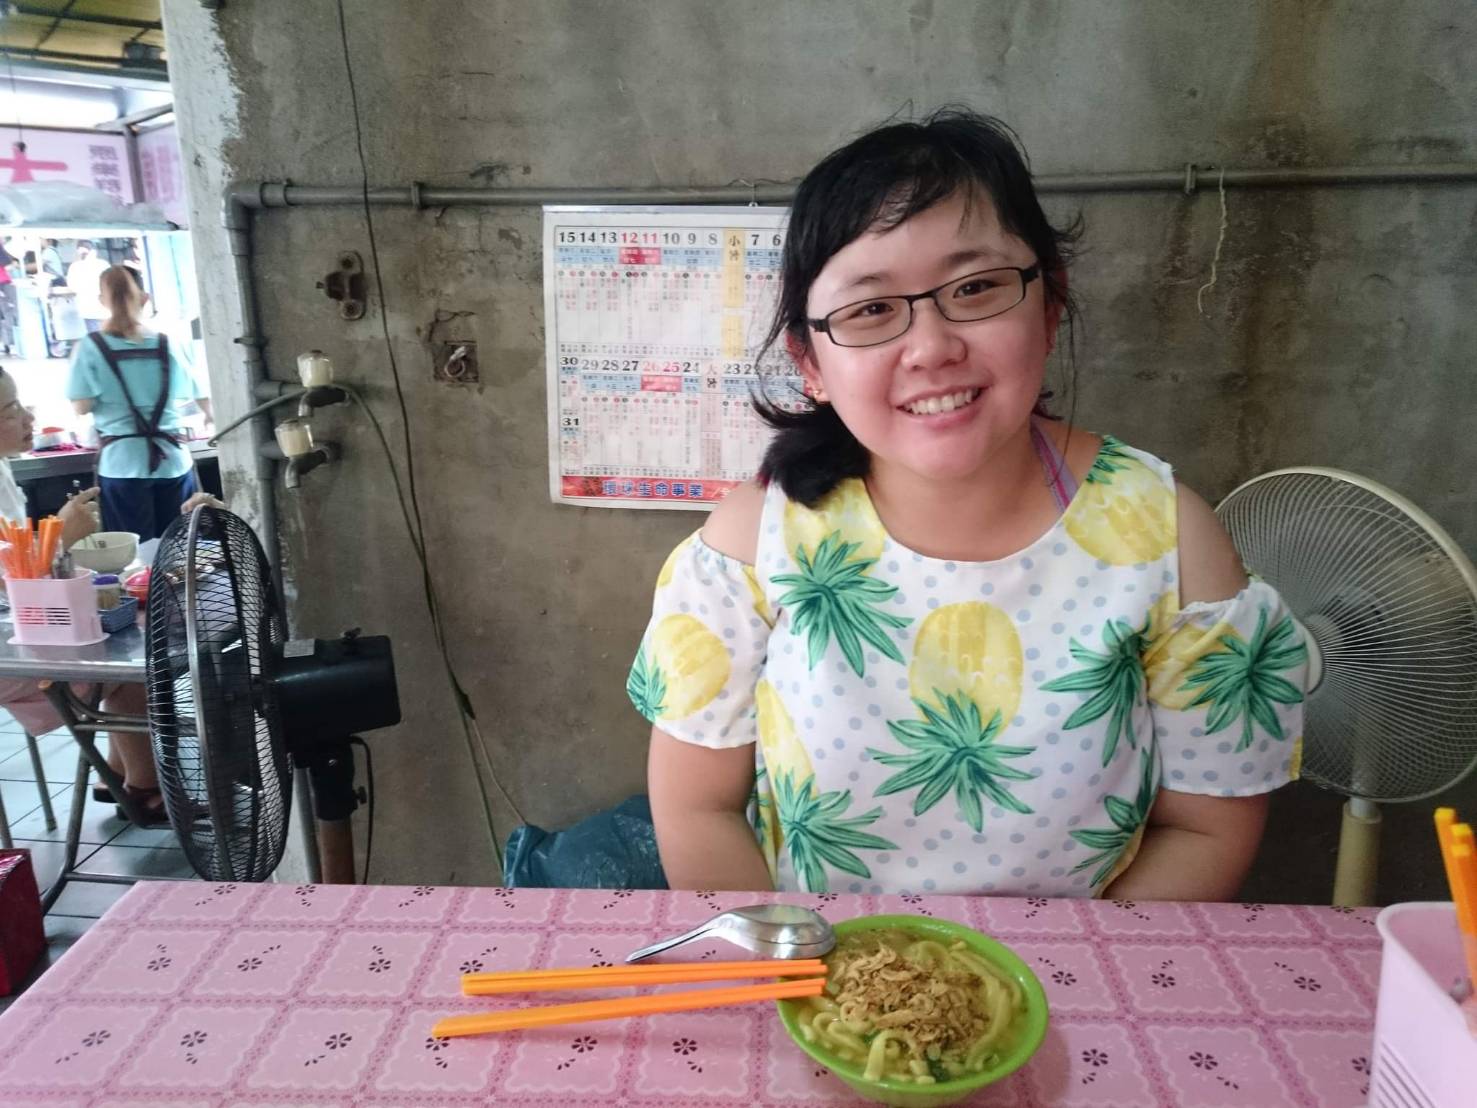 結合關懷、喜好和專業，馬來西亞客家妹盧美靜很喜歡在臺灣的工作